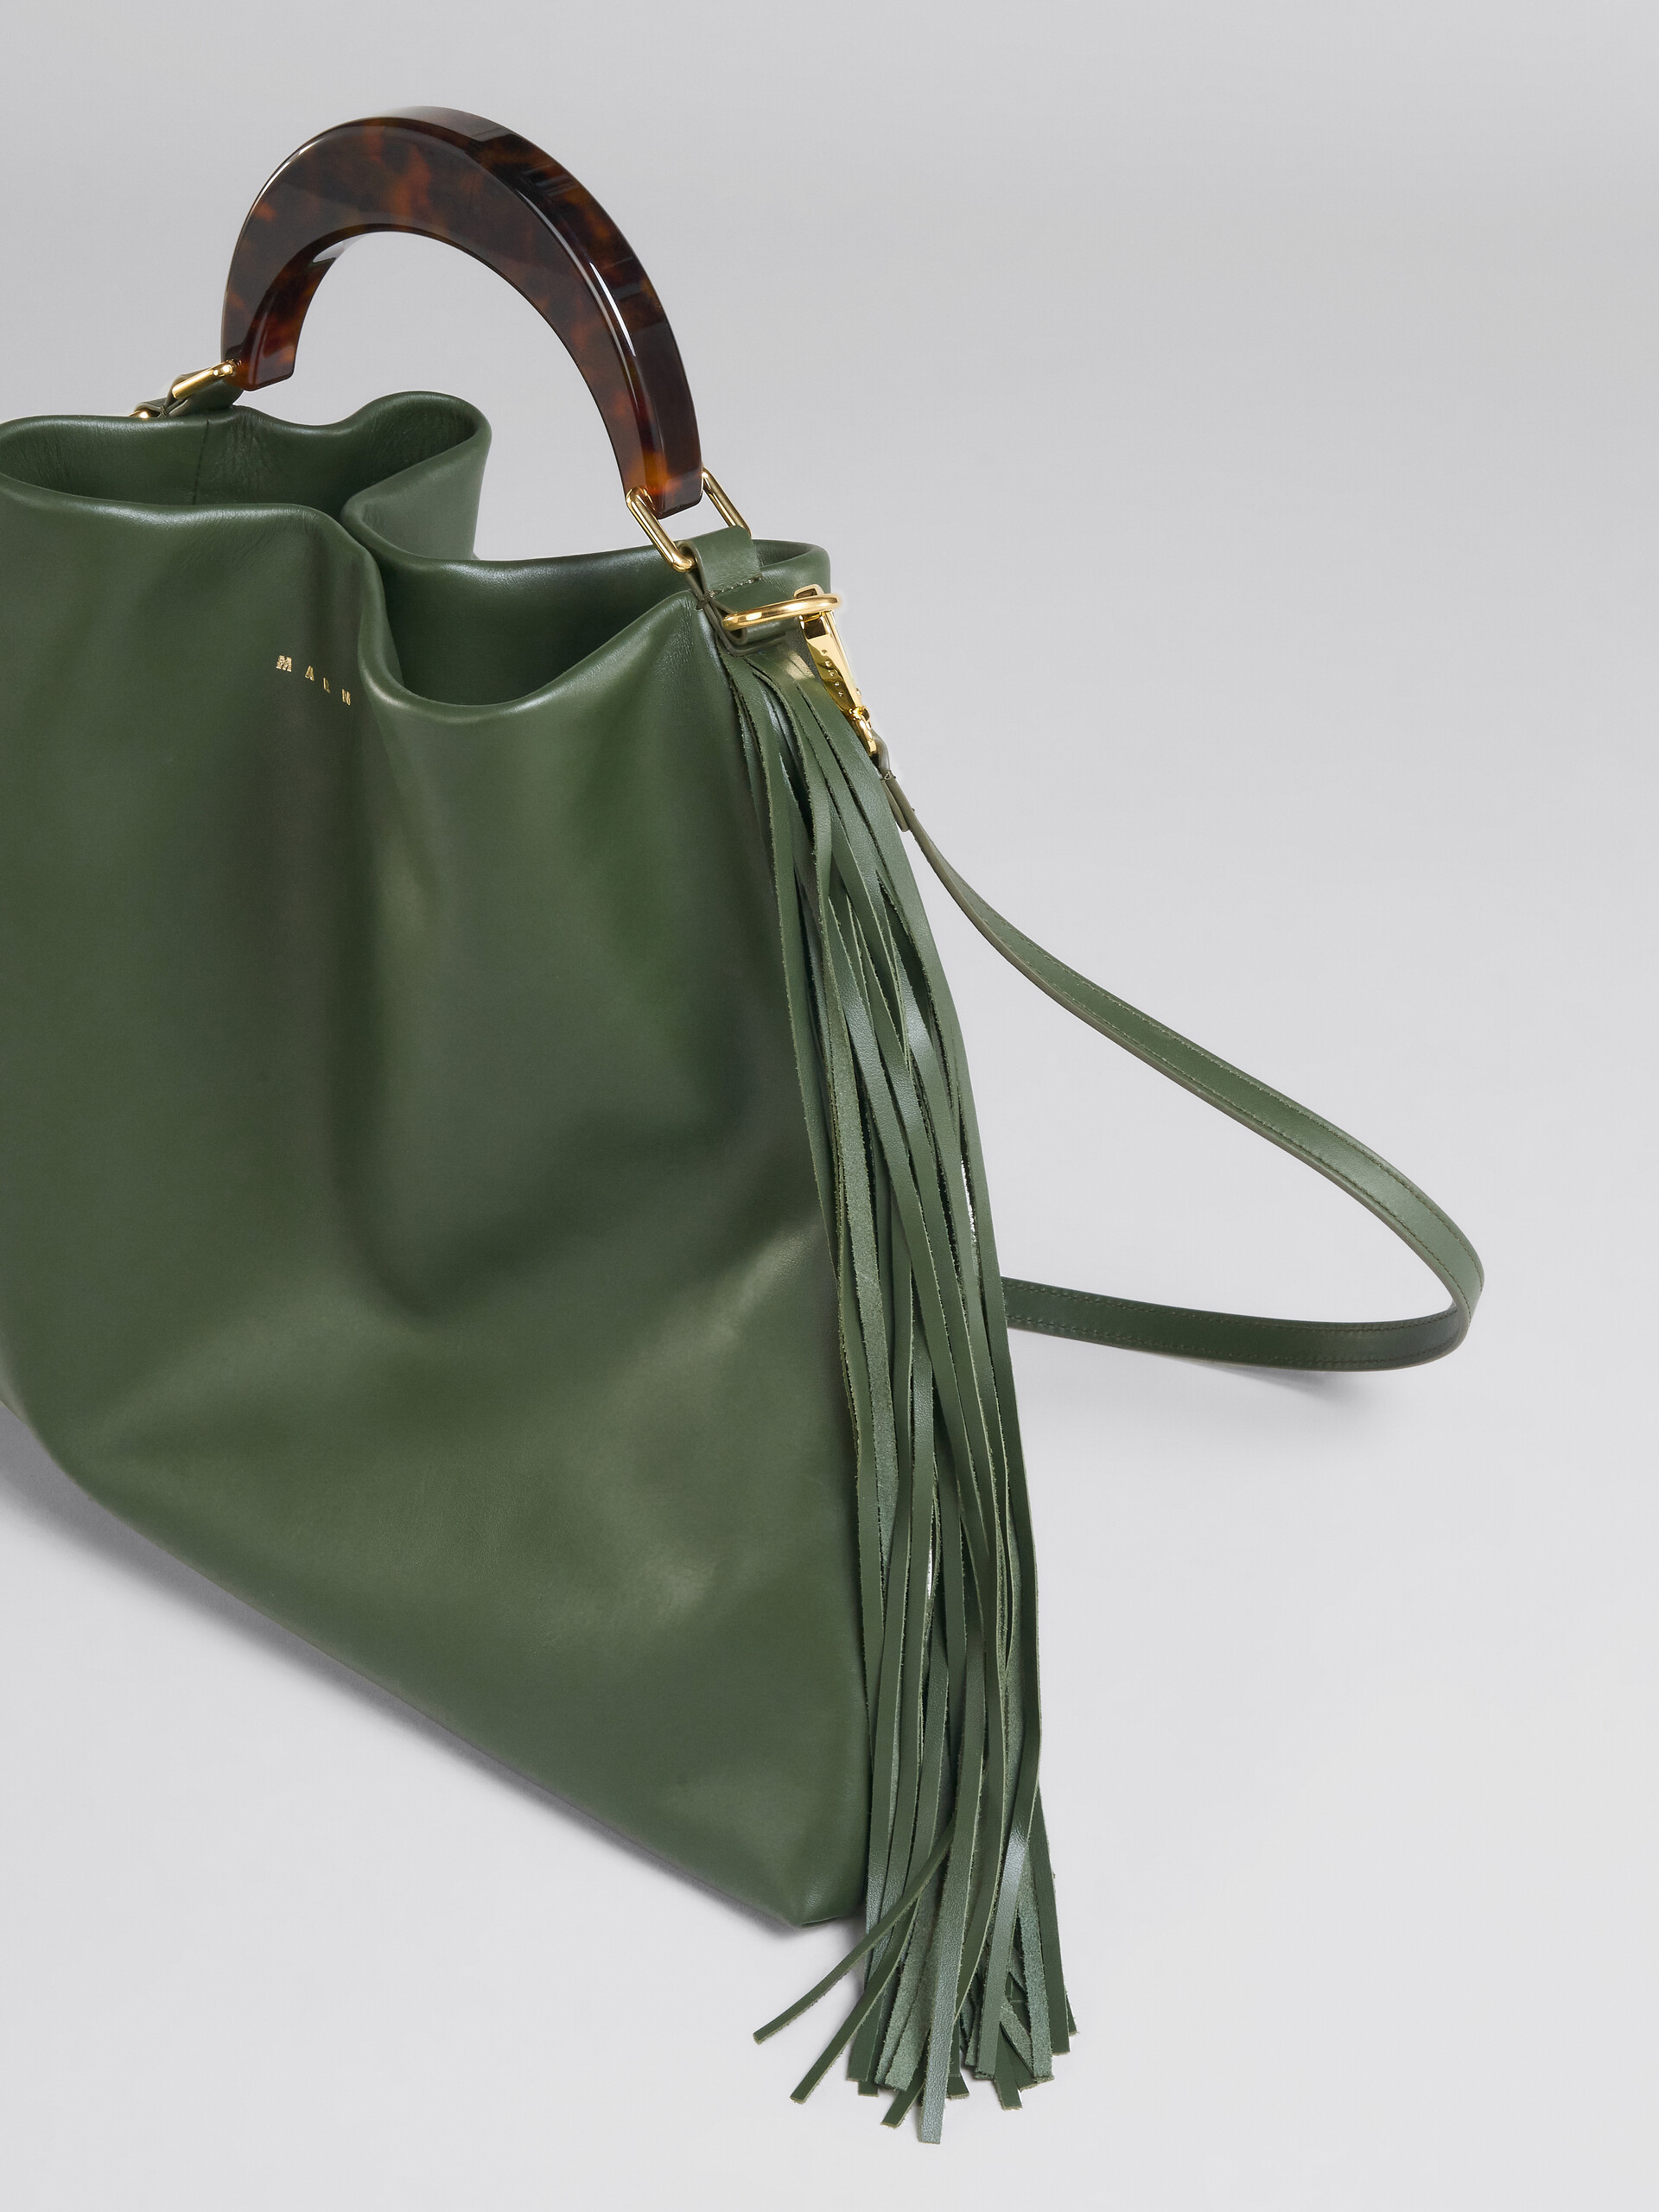 Venice Medium Bag in green leather with fringes - Shoulder Bag - Image 5